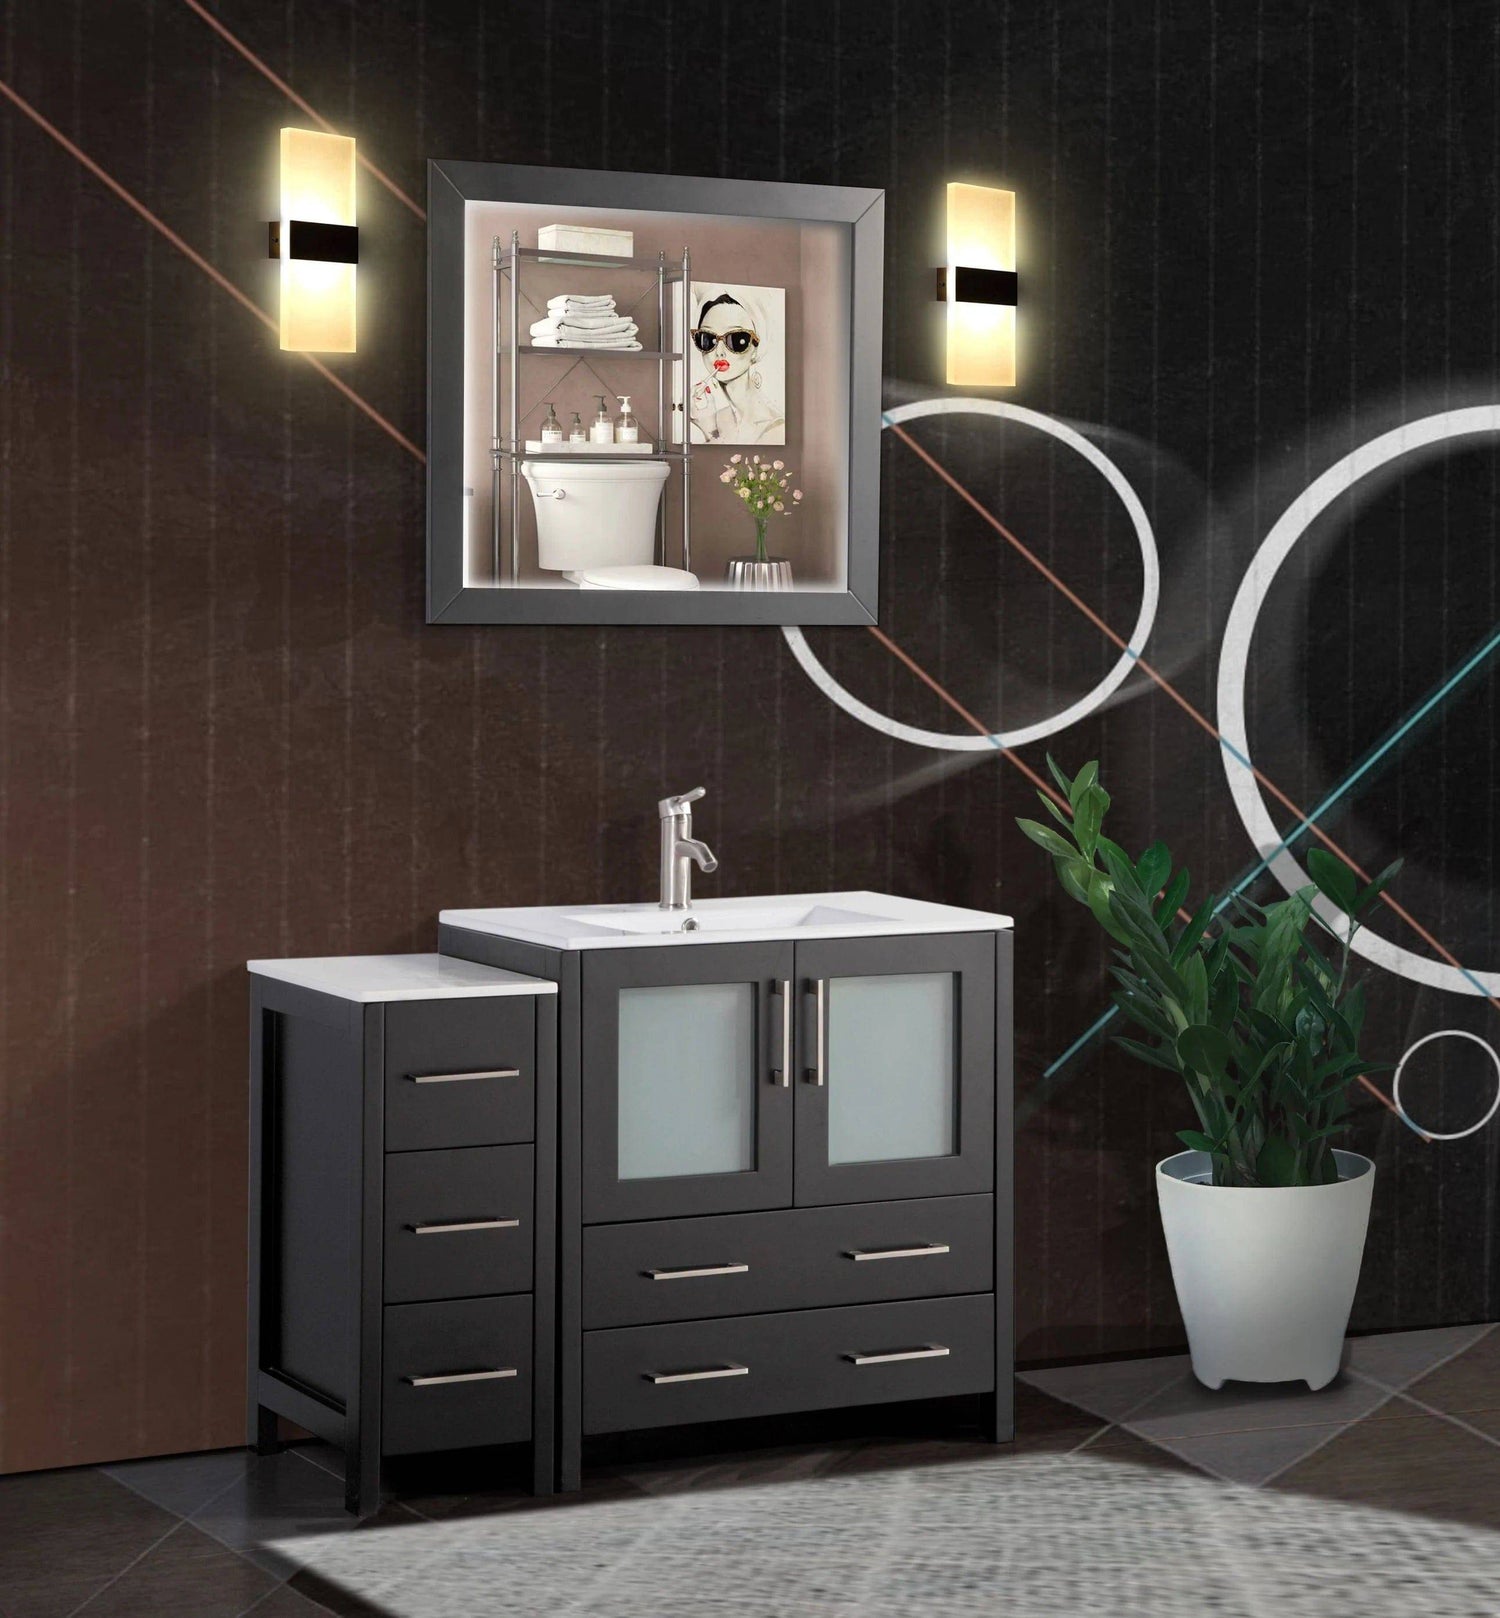 42 in. Single Sink Bathroom Vanity Set in Espresso - Decohub Home